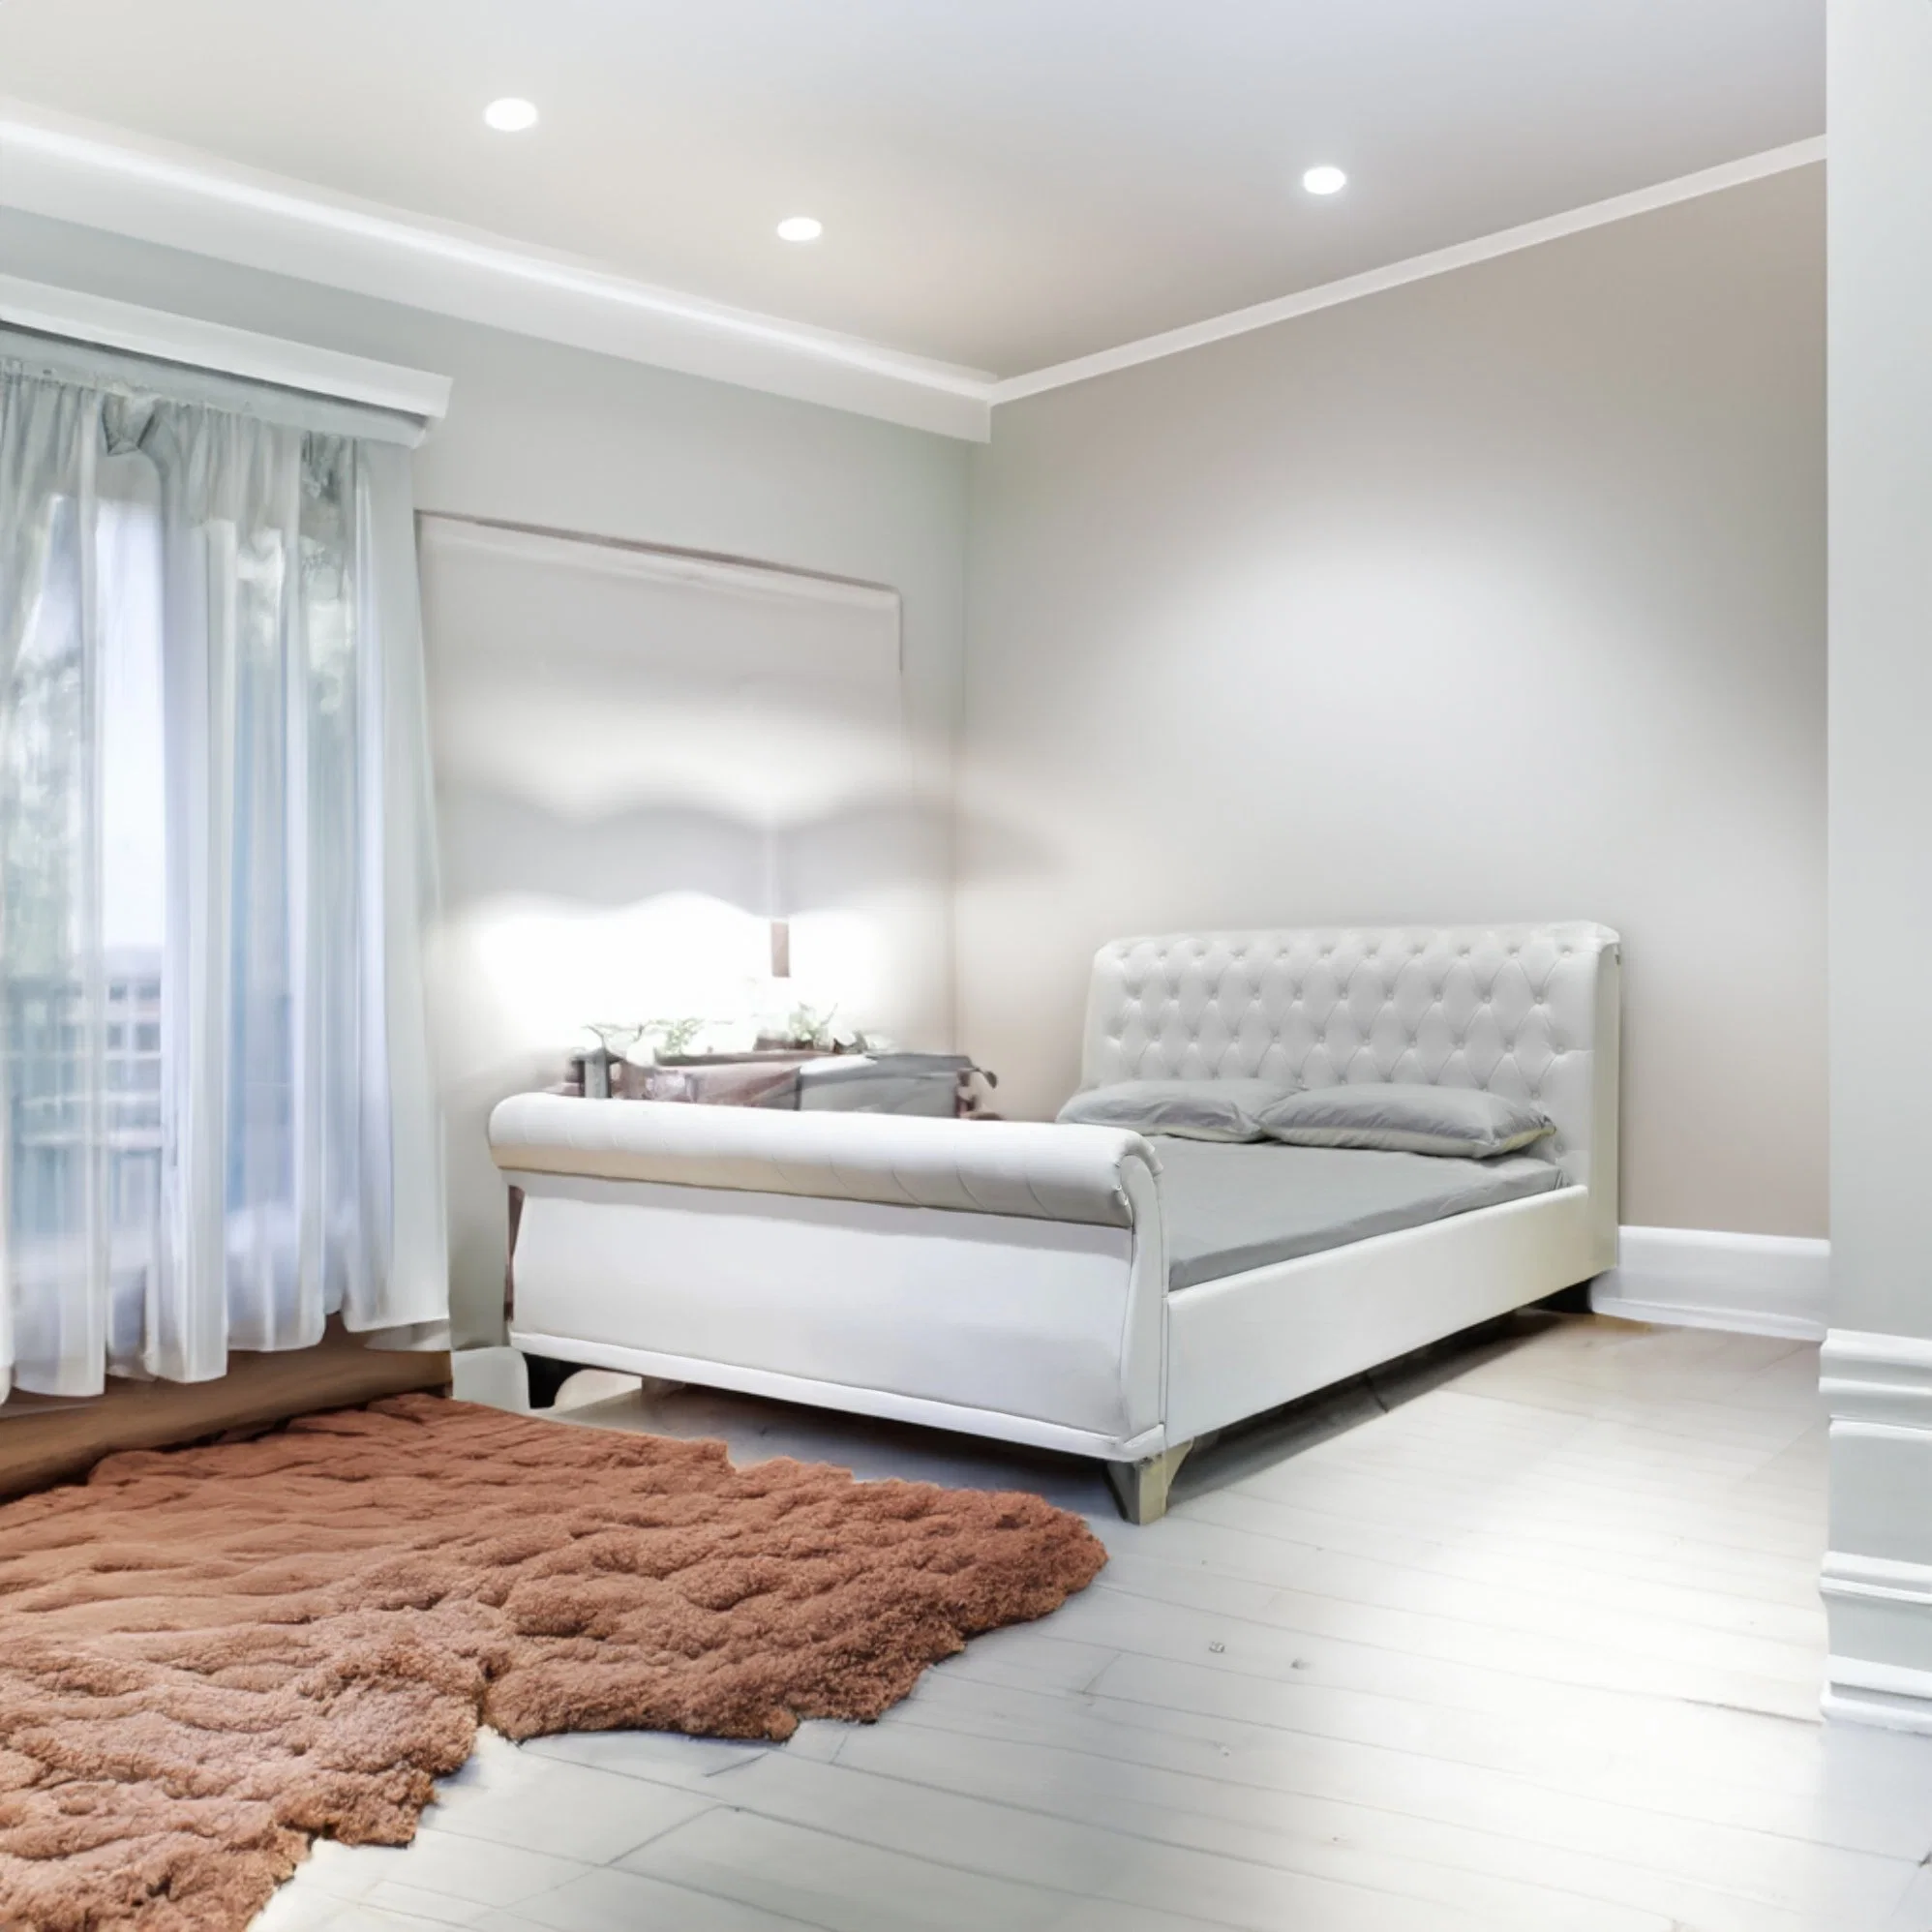 غرفة معيشة فيلا أمريكية ساخنة مزدوجة مصممة على نمط غرف النوم الأثاث